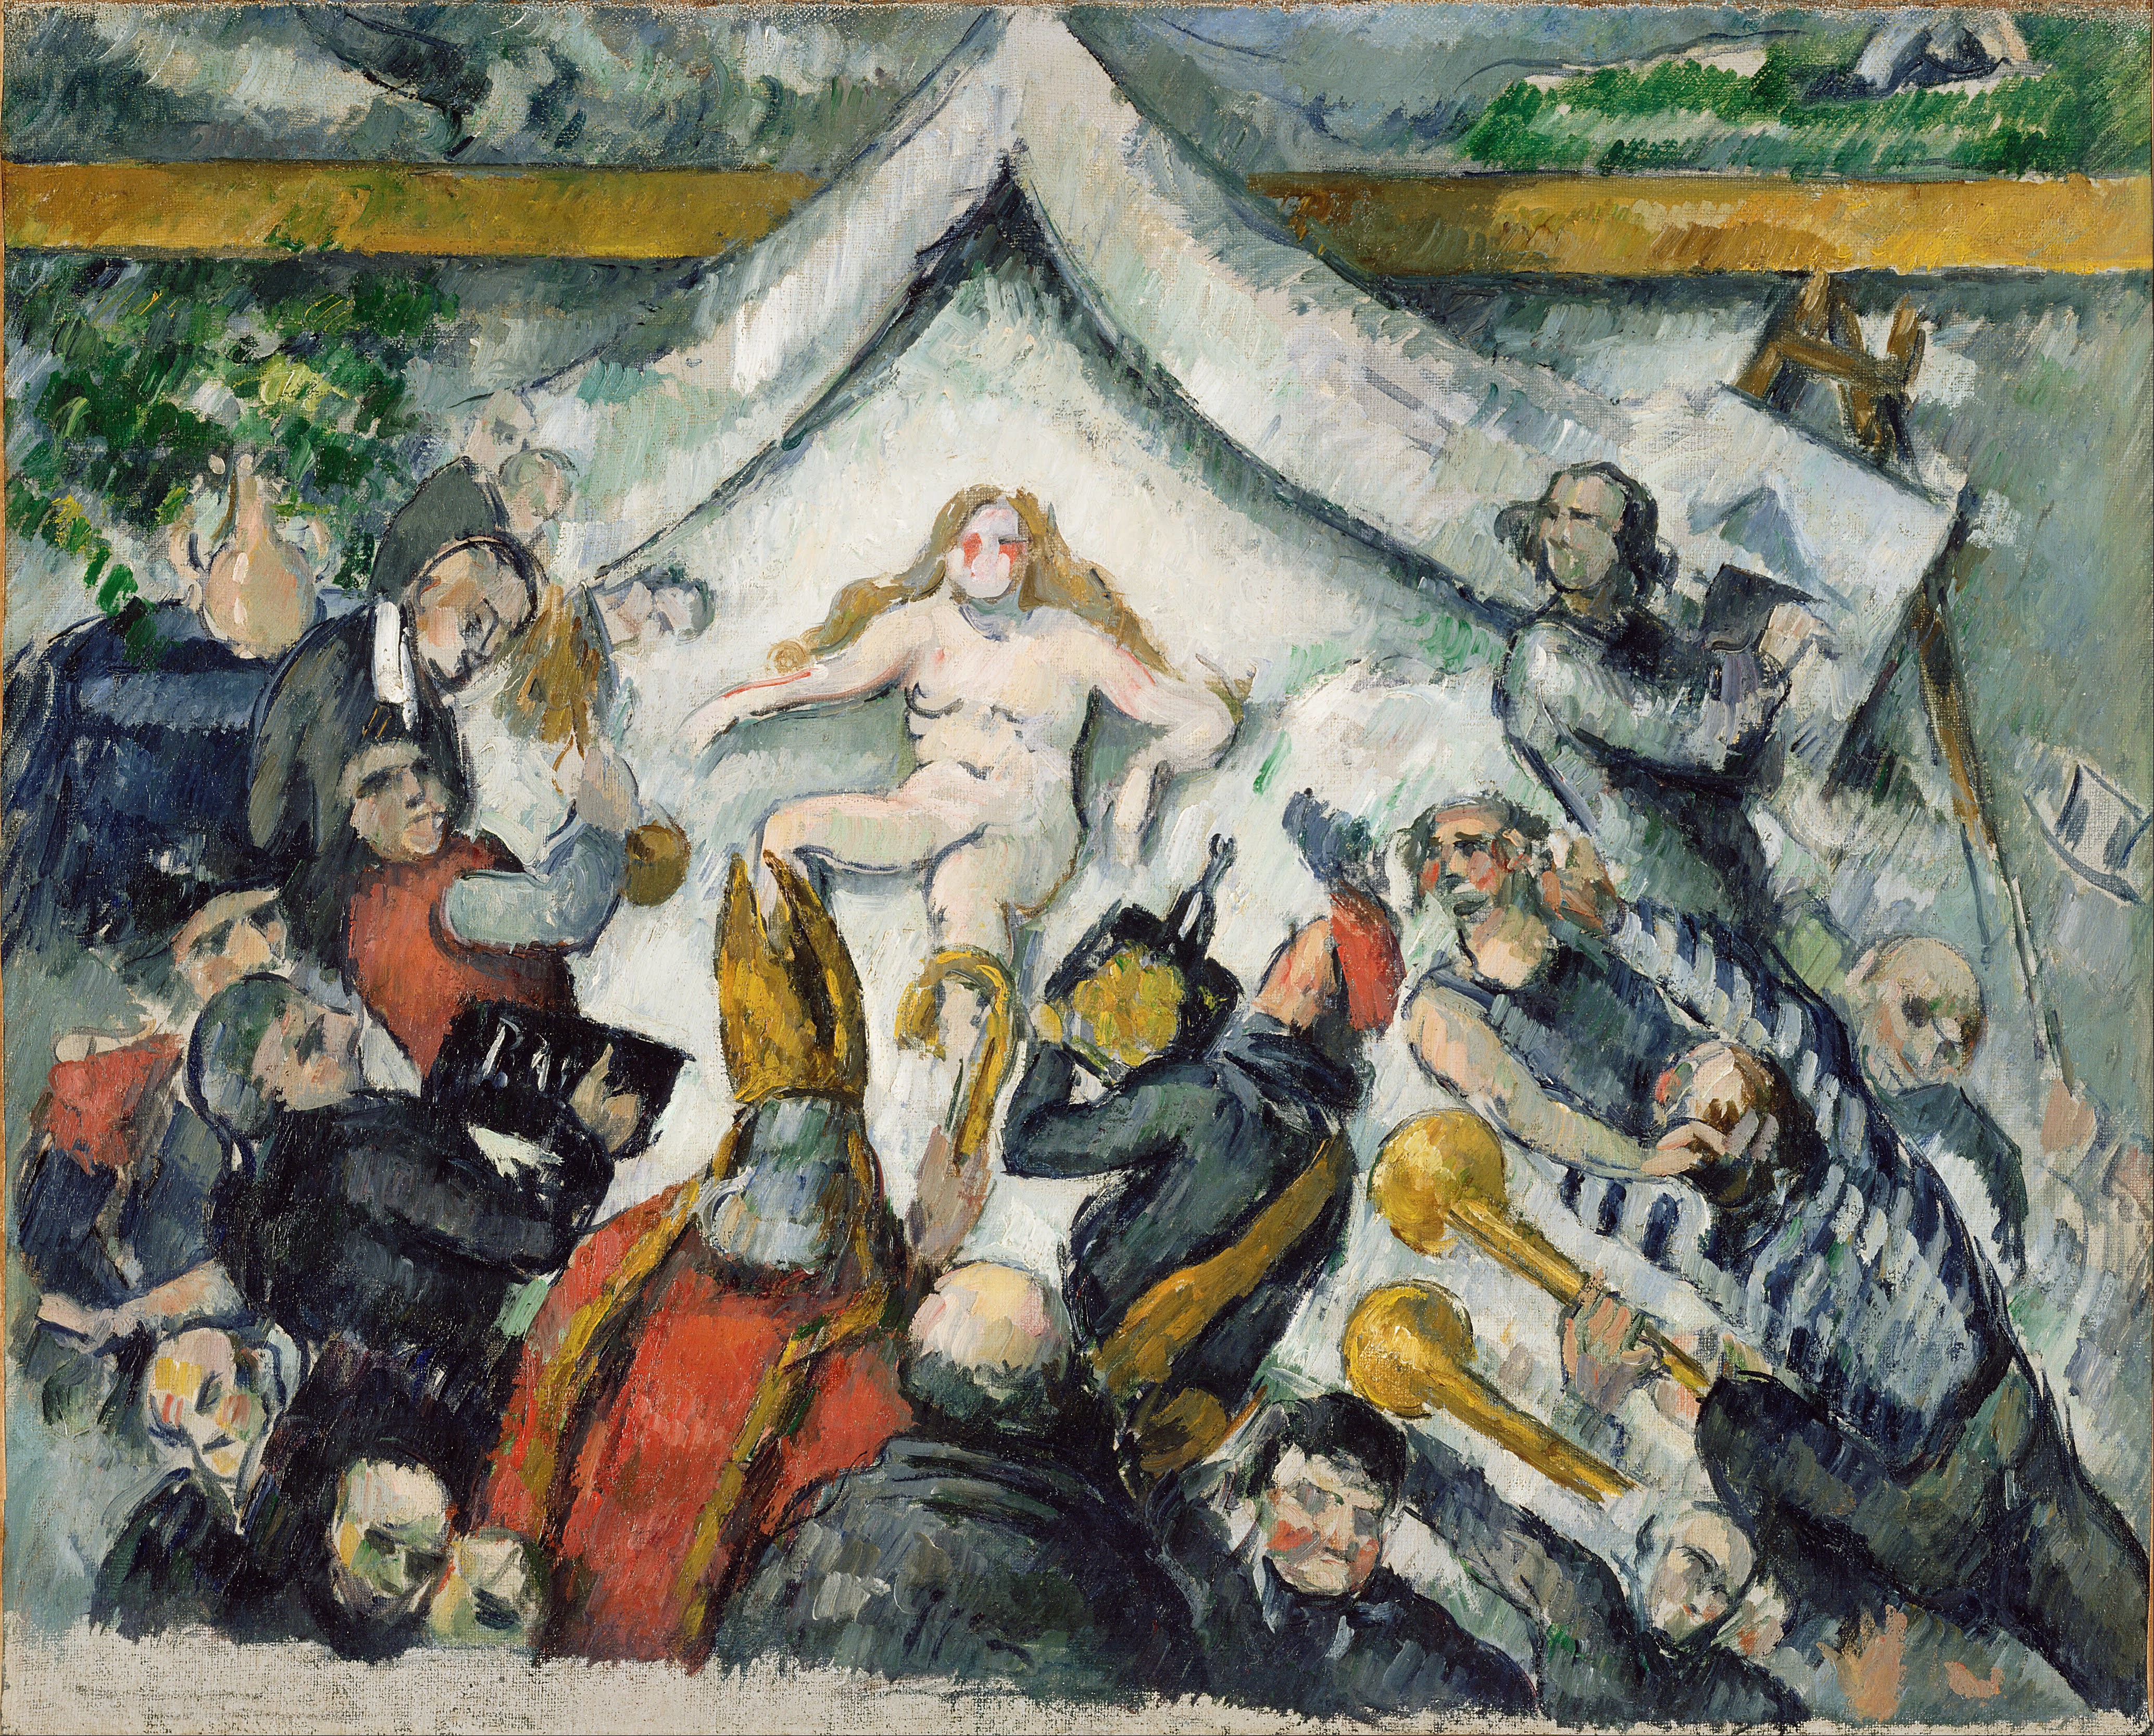 永遠の女性 by Paul Cézanne - 1877年頃 - 53 x 43.2 cm 